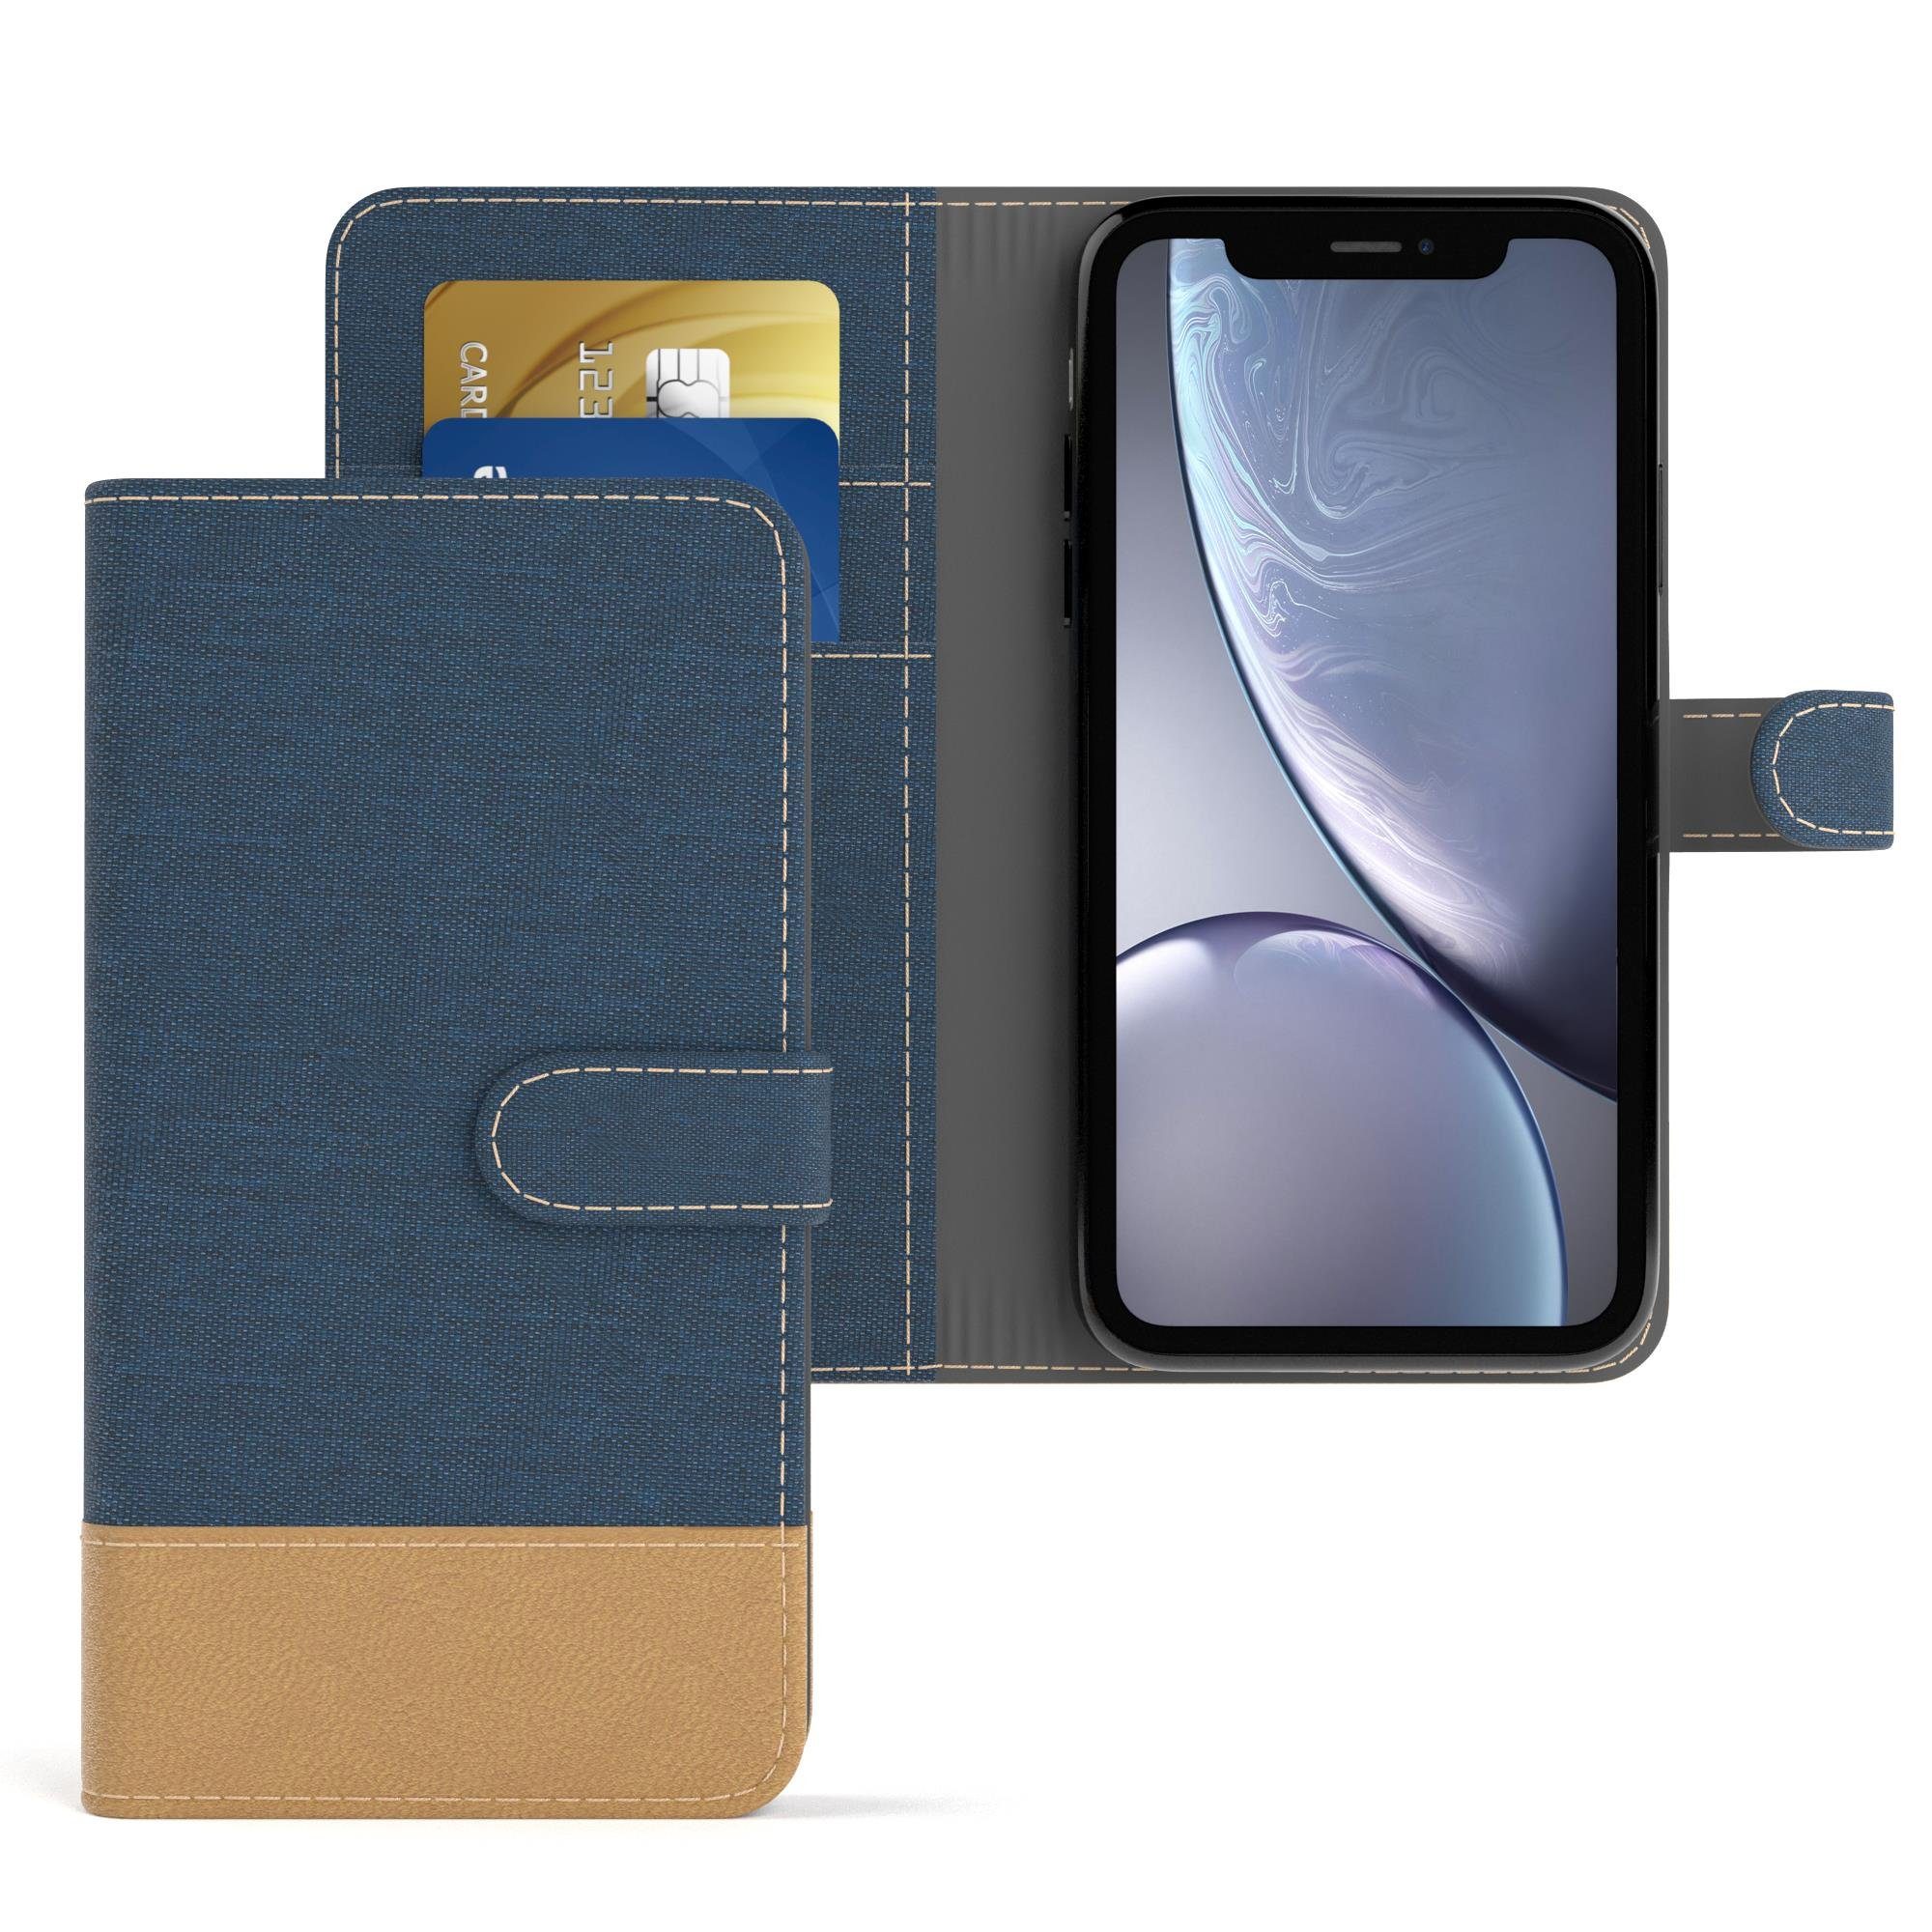 EAZY CASE Handyhülle Bookstyle Farbig für Apple iPhone XR 6,1 Zoll, Klappcase mit Standfunktion und Kartenfach Stoff Schutzhülle Blau